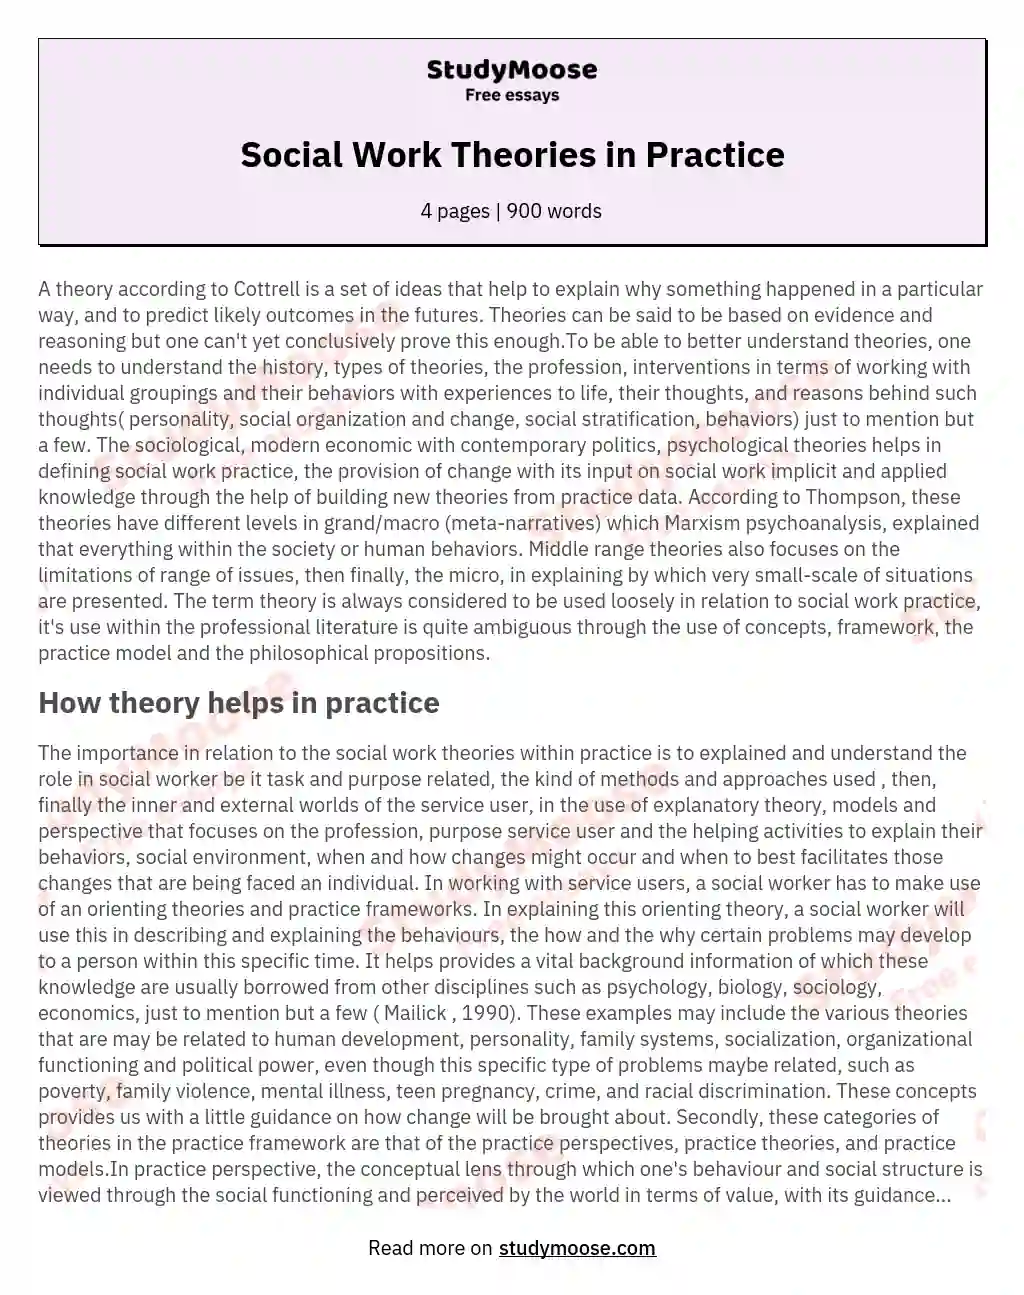 Social Work Theories in Practice essay